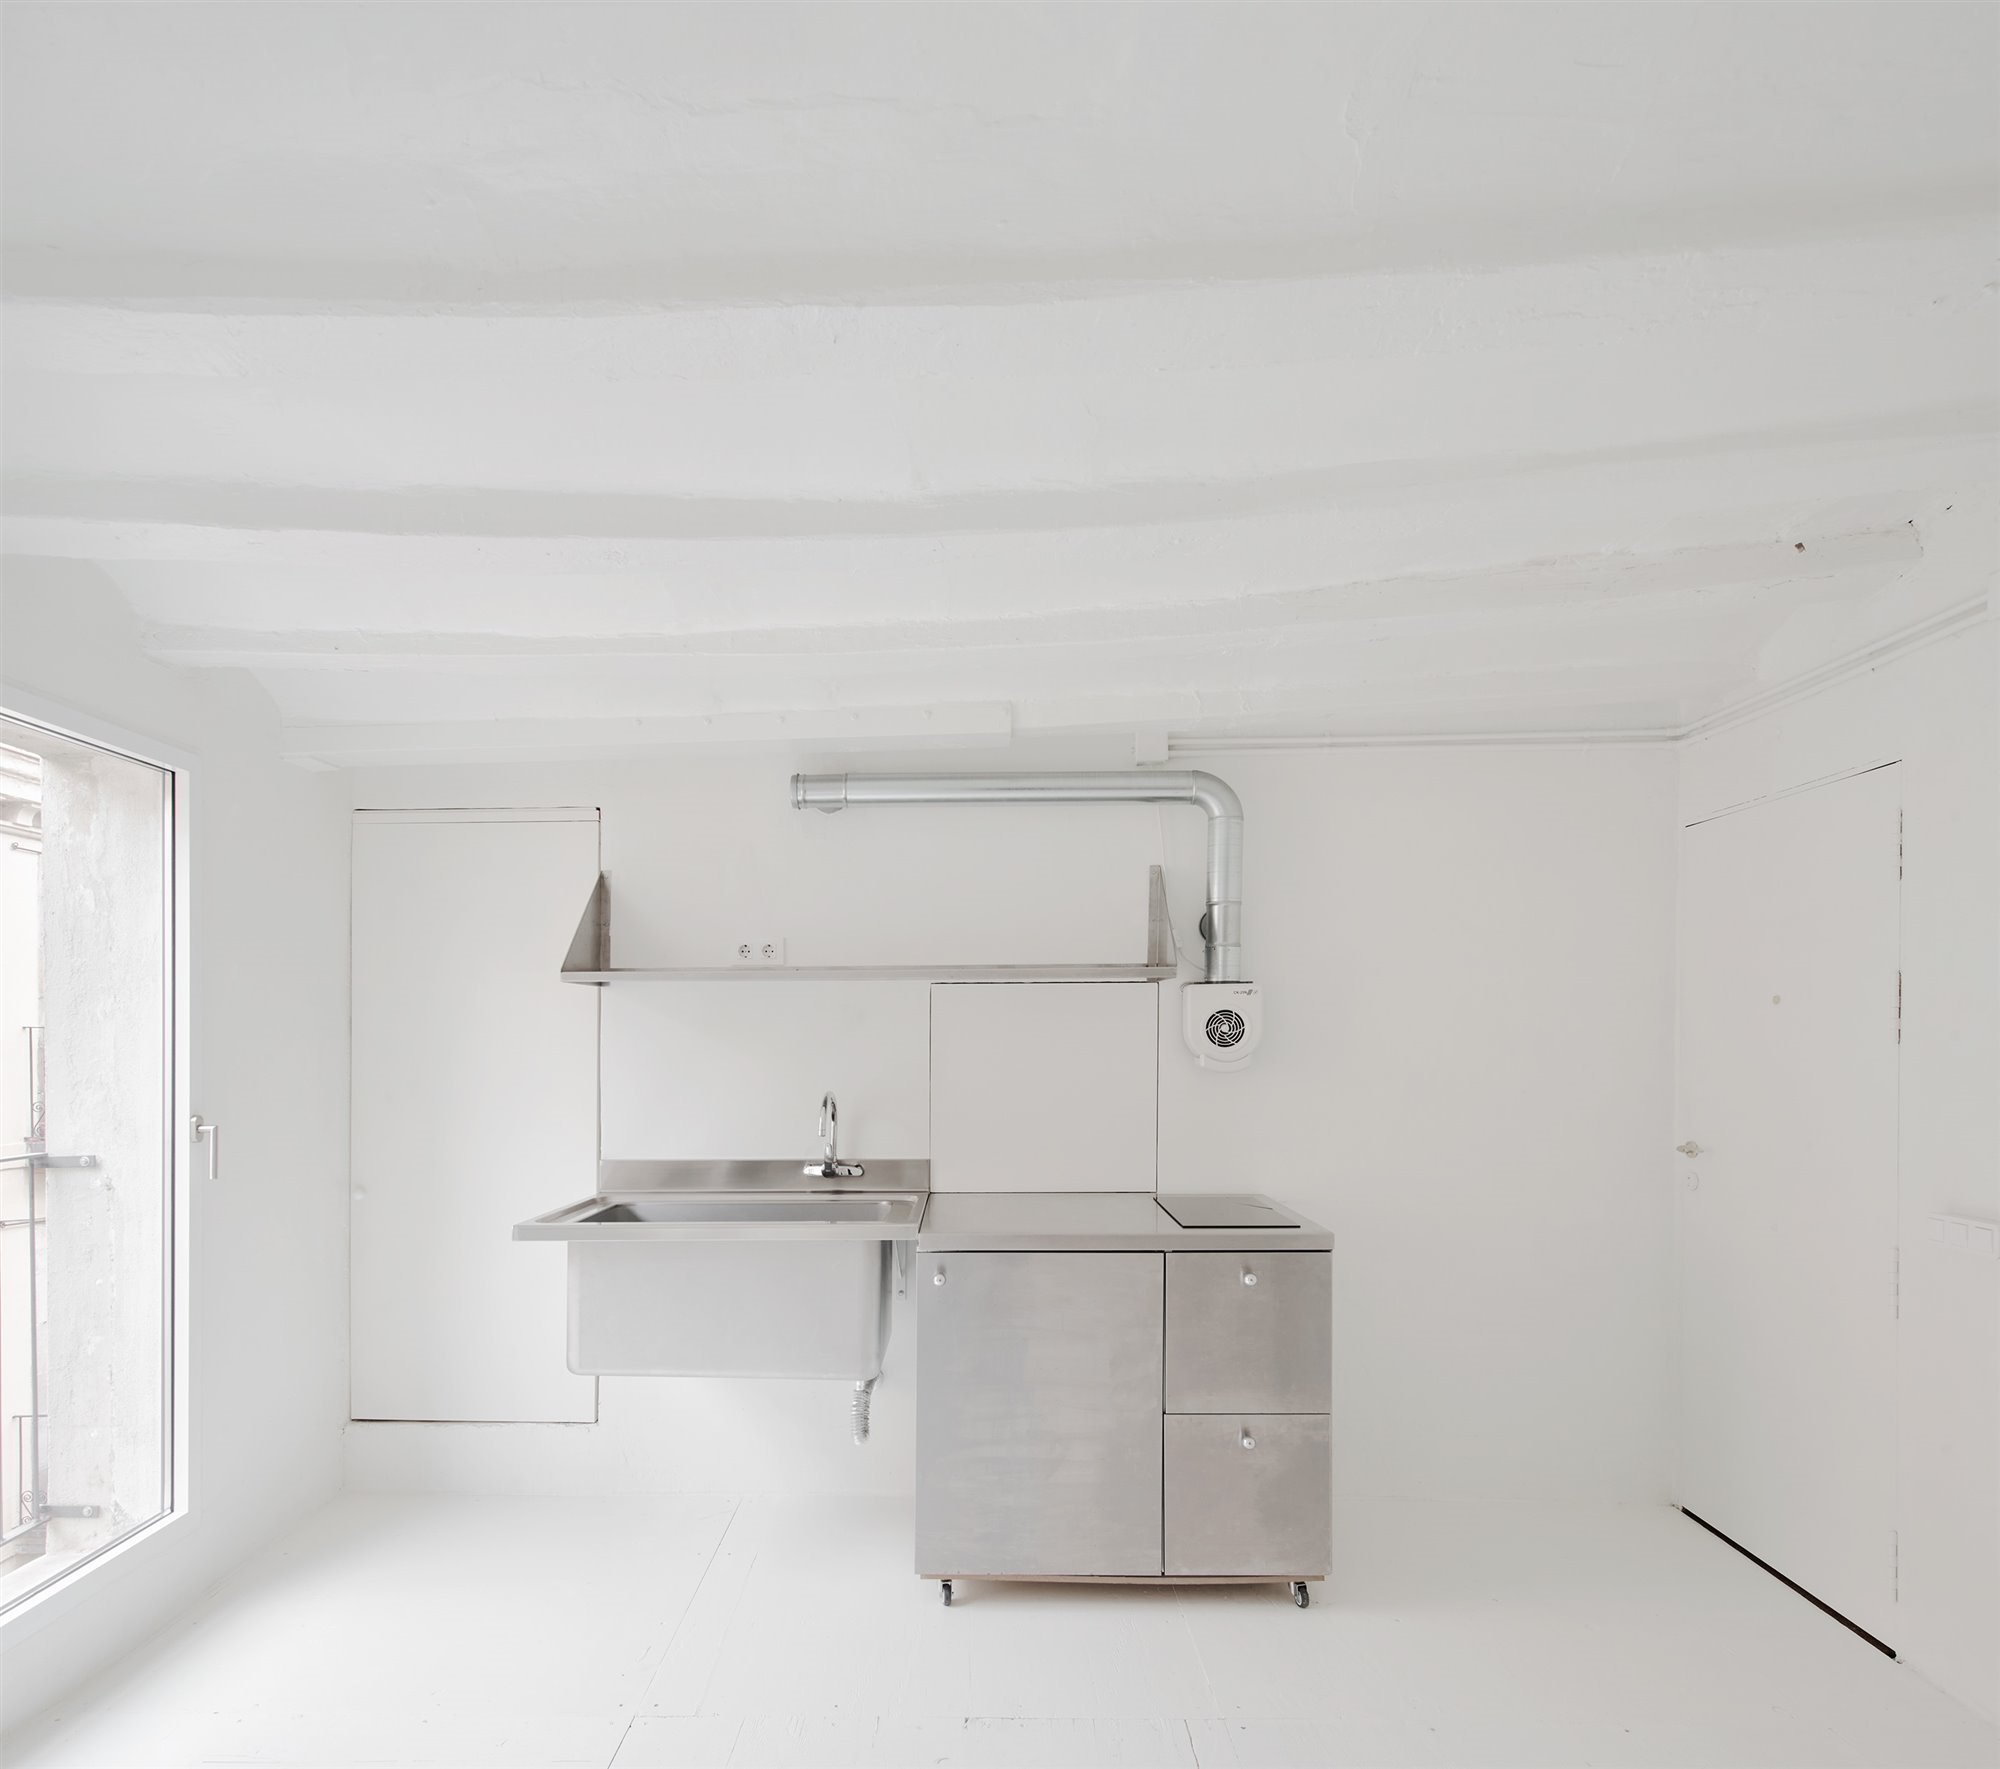 El mueble de la cocina dispone de ruedas, de nuevo, para poder desplazarse por el espacio o reubicarse en caso de ampliar el piso. Foto: José Hevia